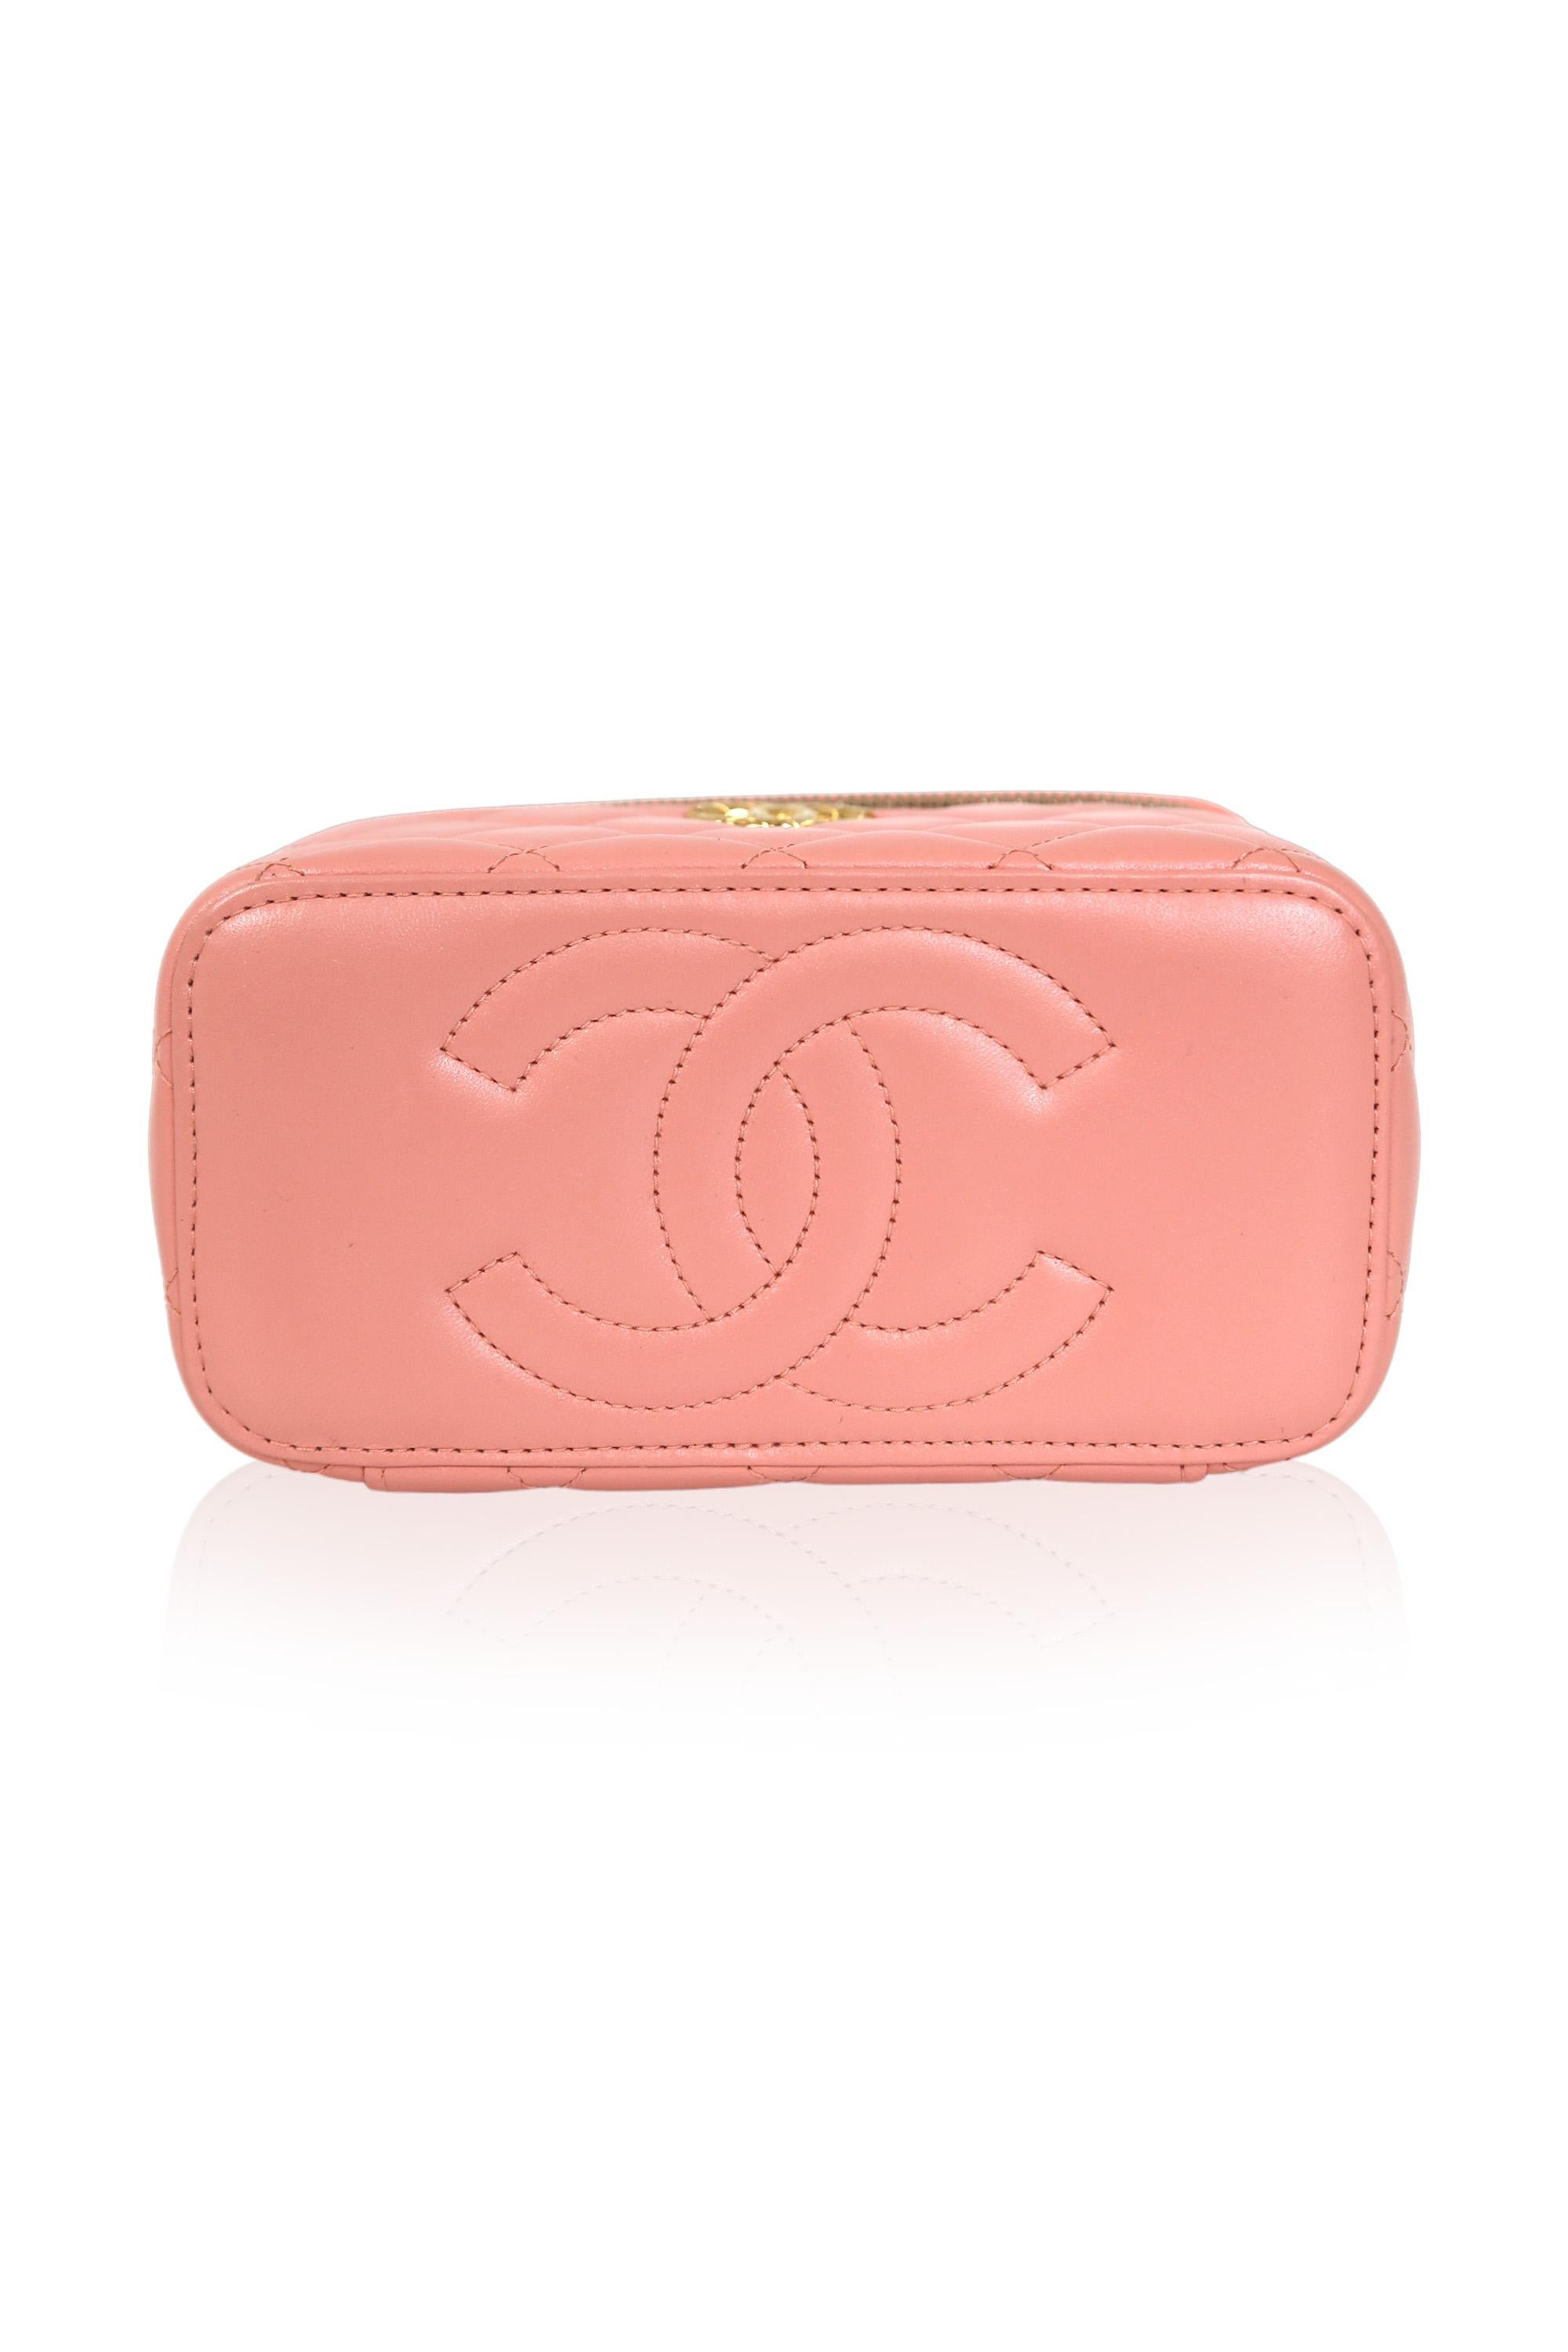 Chanel Vanity Case Pink Leather Handbag For Sale 1